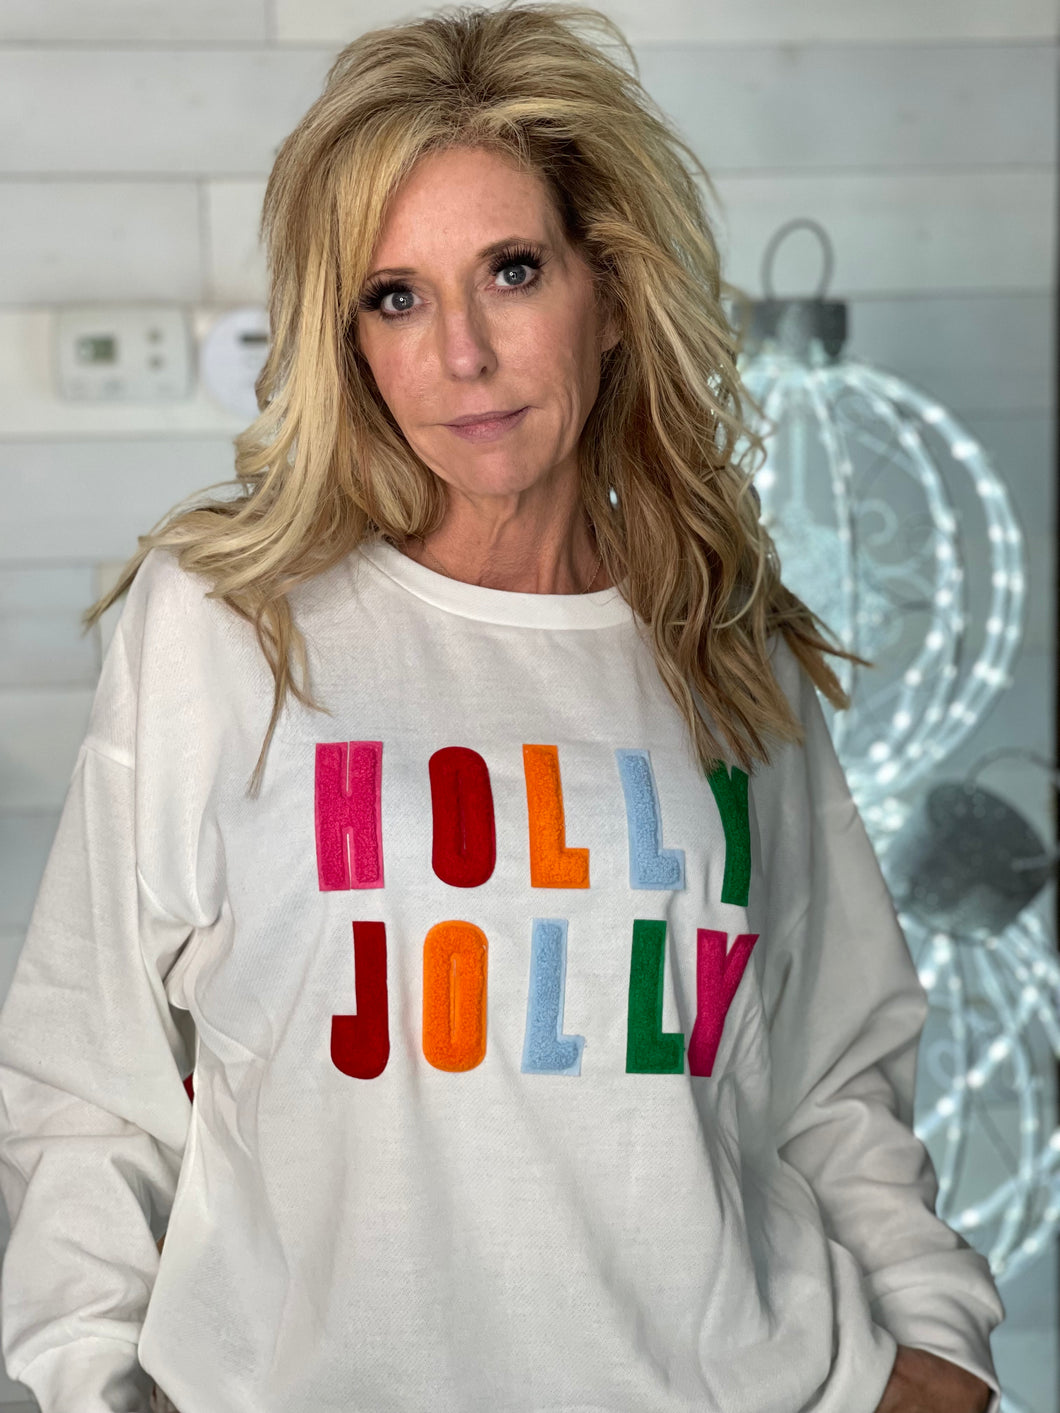 Holly Jolly Pullover